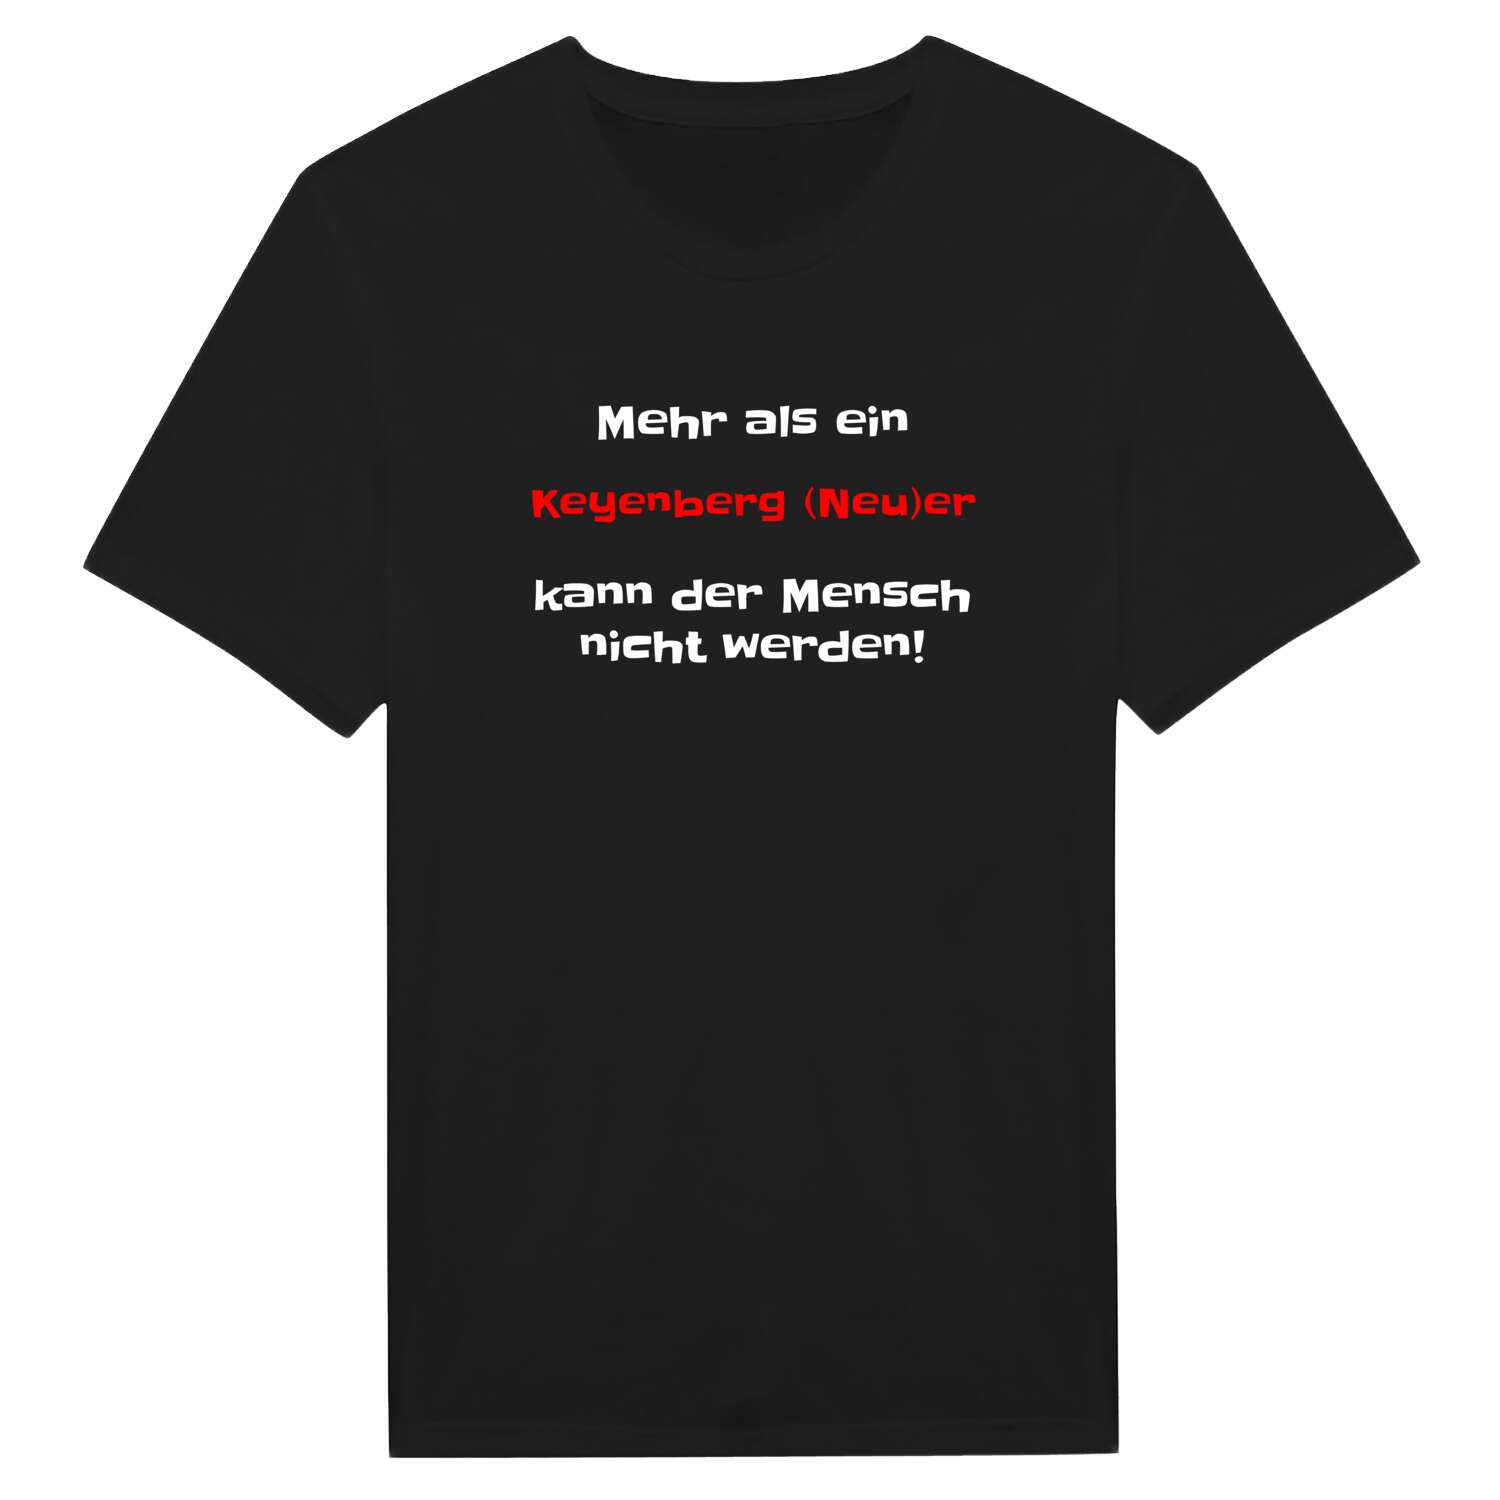 Keyenberg (Neu) T-Shirt »Mehr als ein«